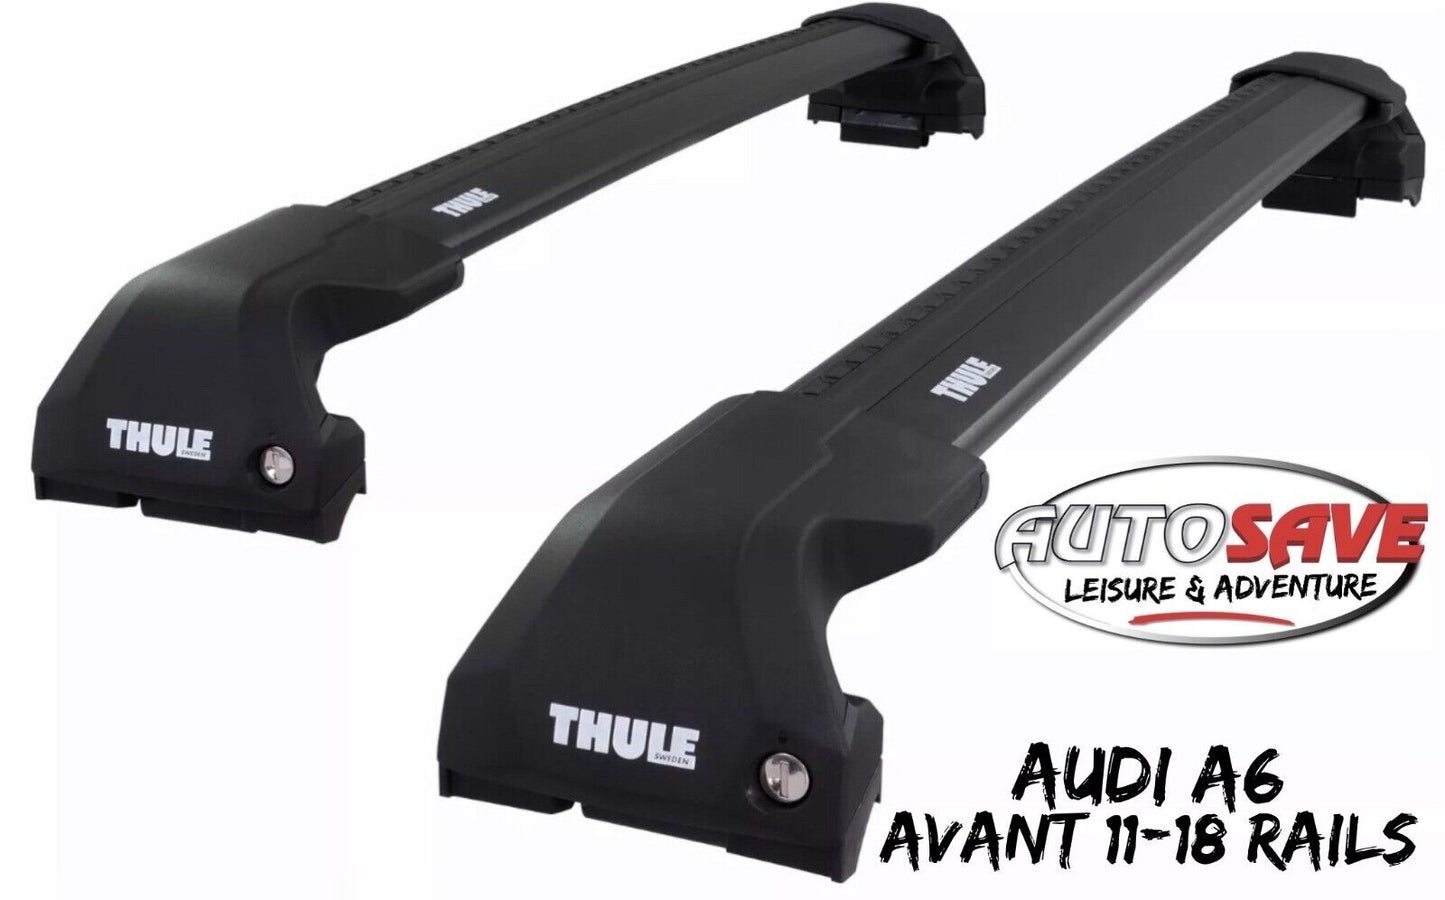 Thule WingBar Edge Black Aluminium Roof Bars Set for Audi A6 Avant 11-18 Rails